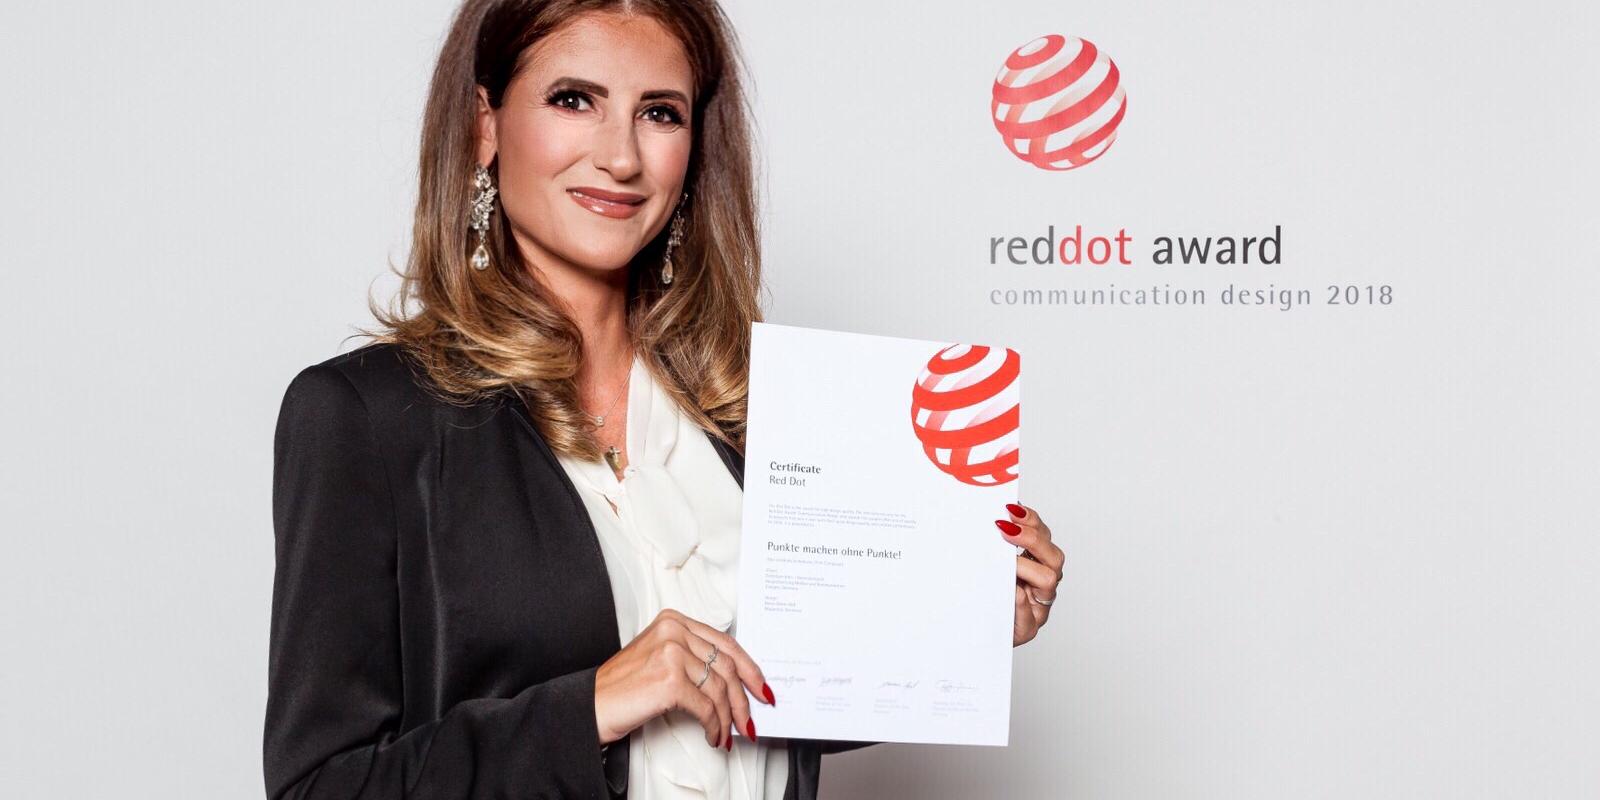 Tanja Roa aus der Hauptabteilung Medien und Kommunikation hat die Auszeichnung stellvertretend für das Projektteam entgegengenommen.